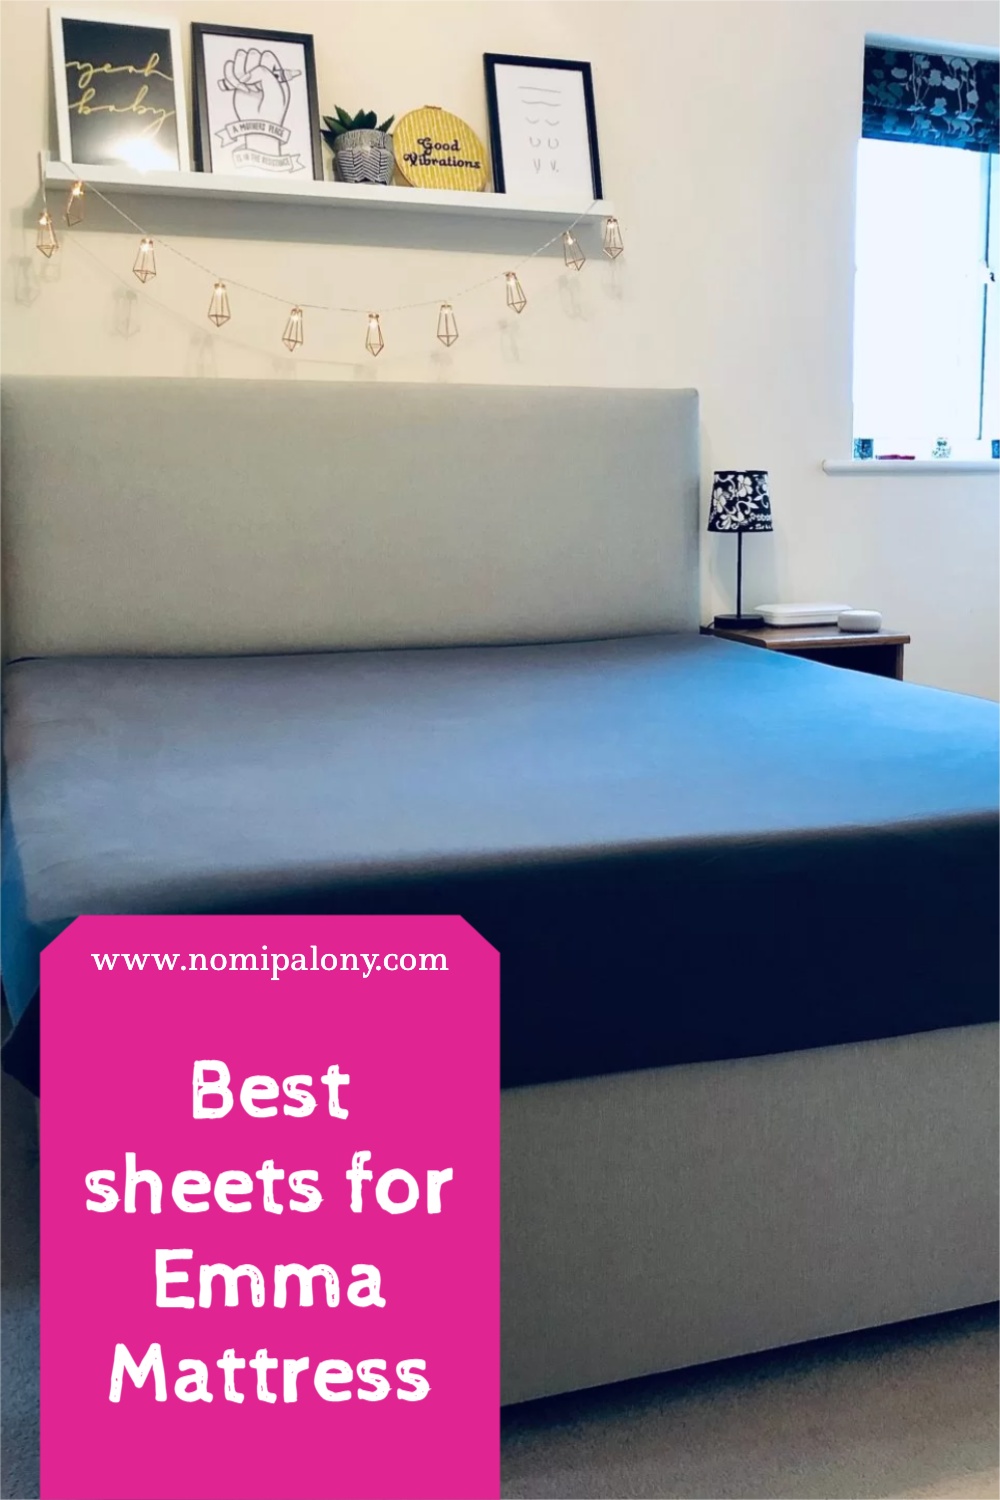 Best sheets for Emma mattress 